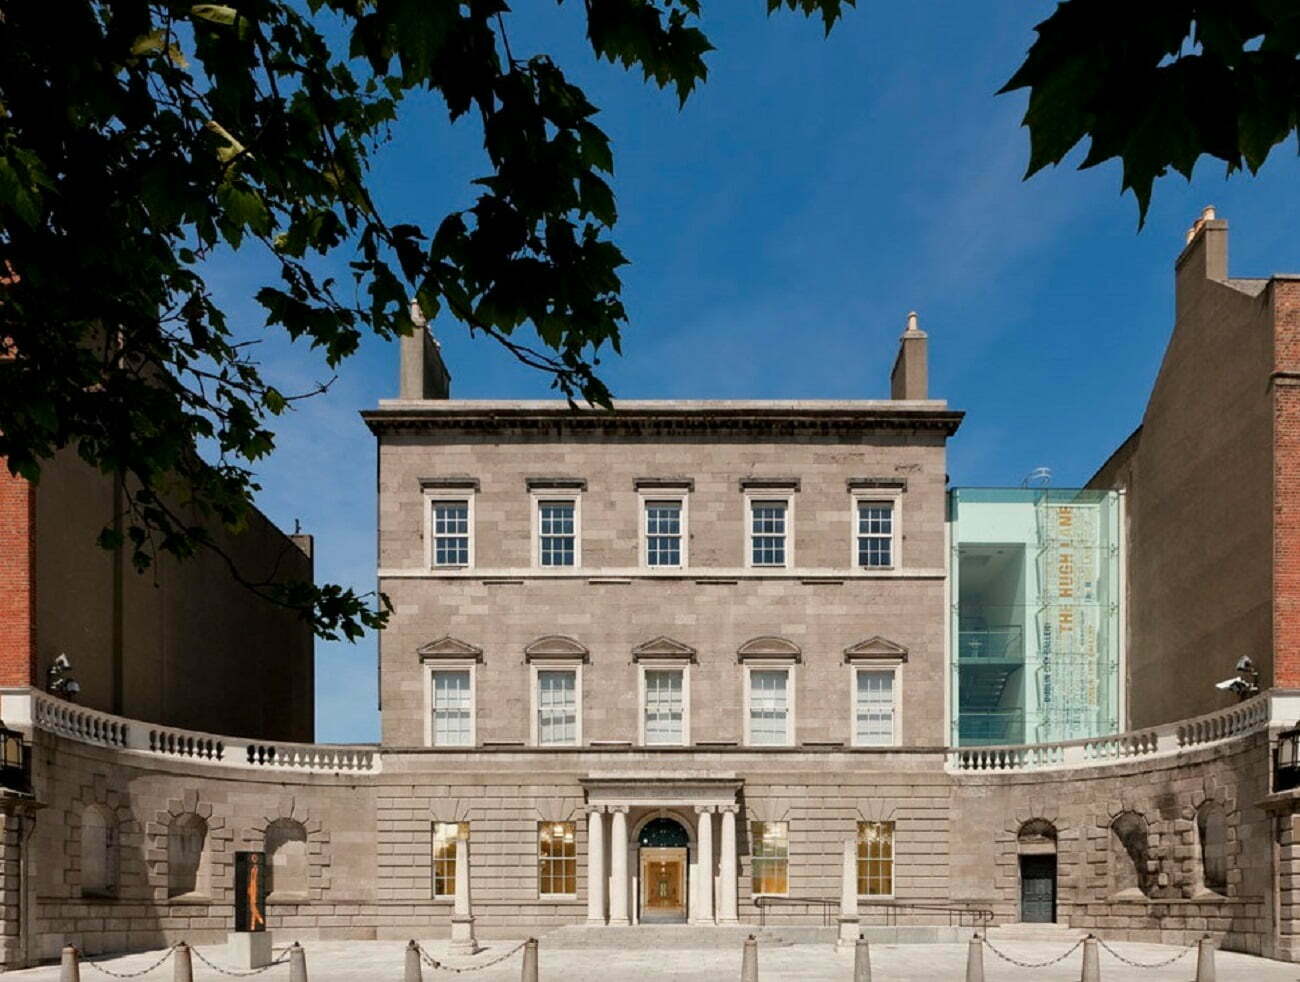 DOCUMENTAR – Galeria Hugh Lane din Dublin, o viziune inovatoare cu accent pe excelența în practica artistică irlandeză – FOTO